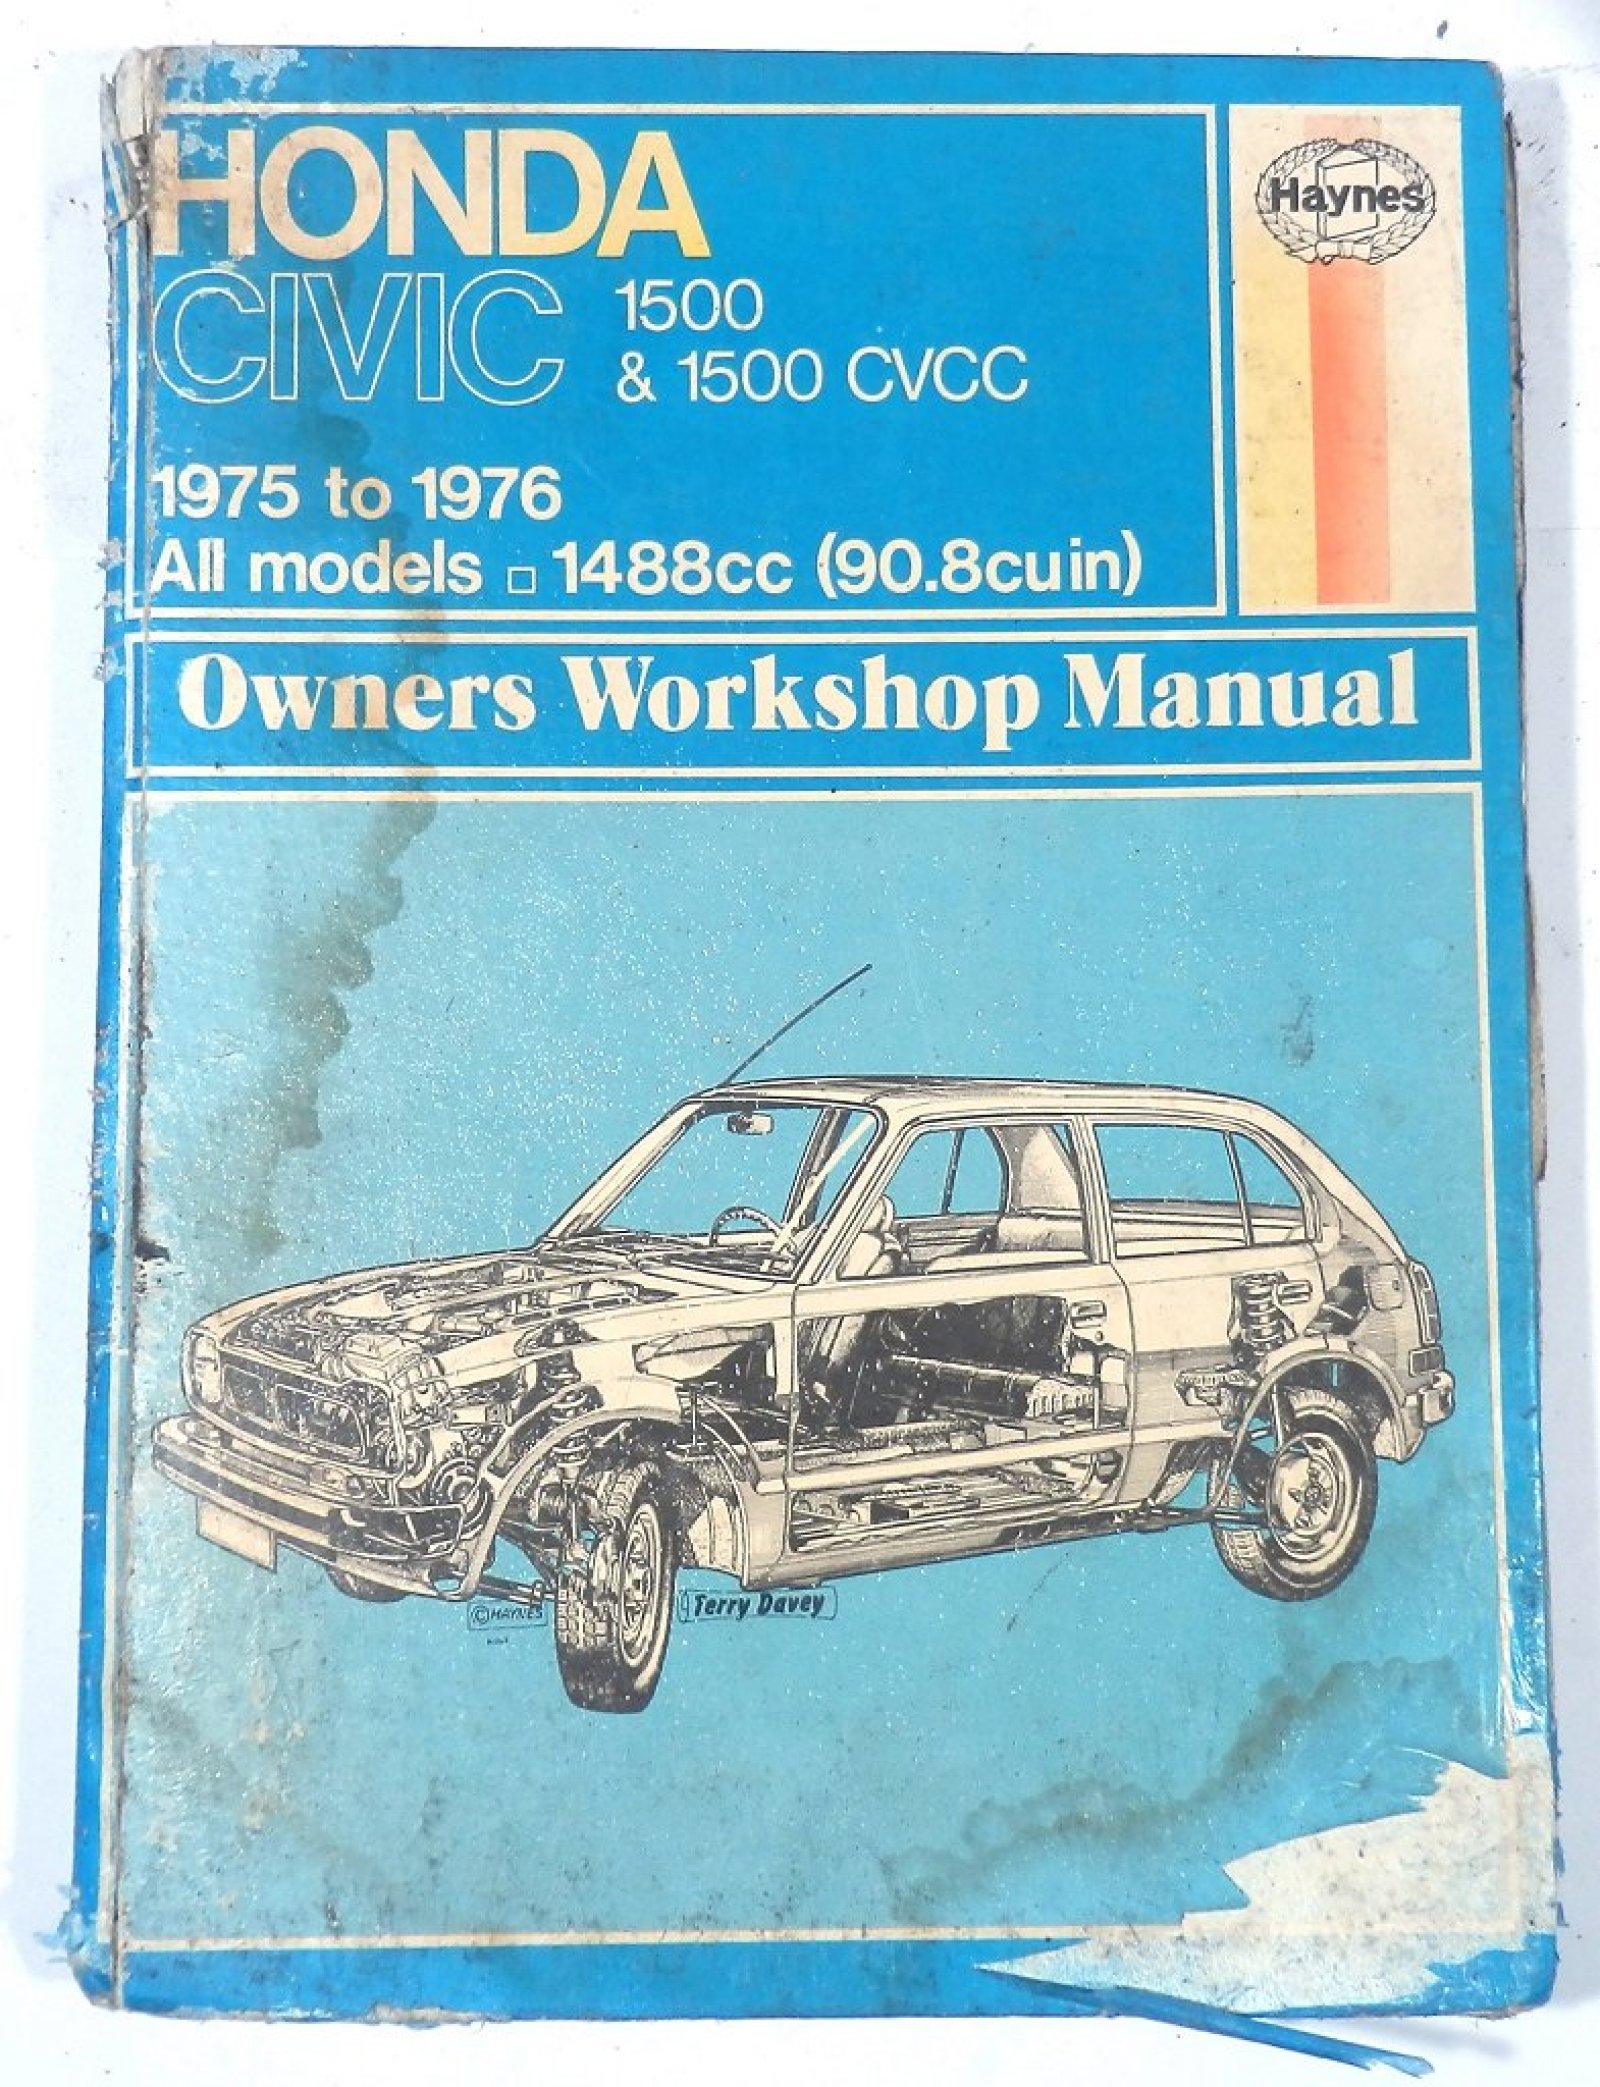 1500 1975 79 Civic cvcc haynes honda manual #6